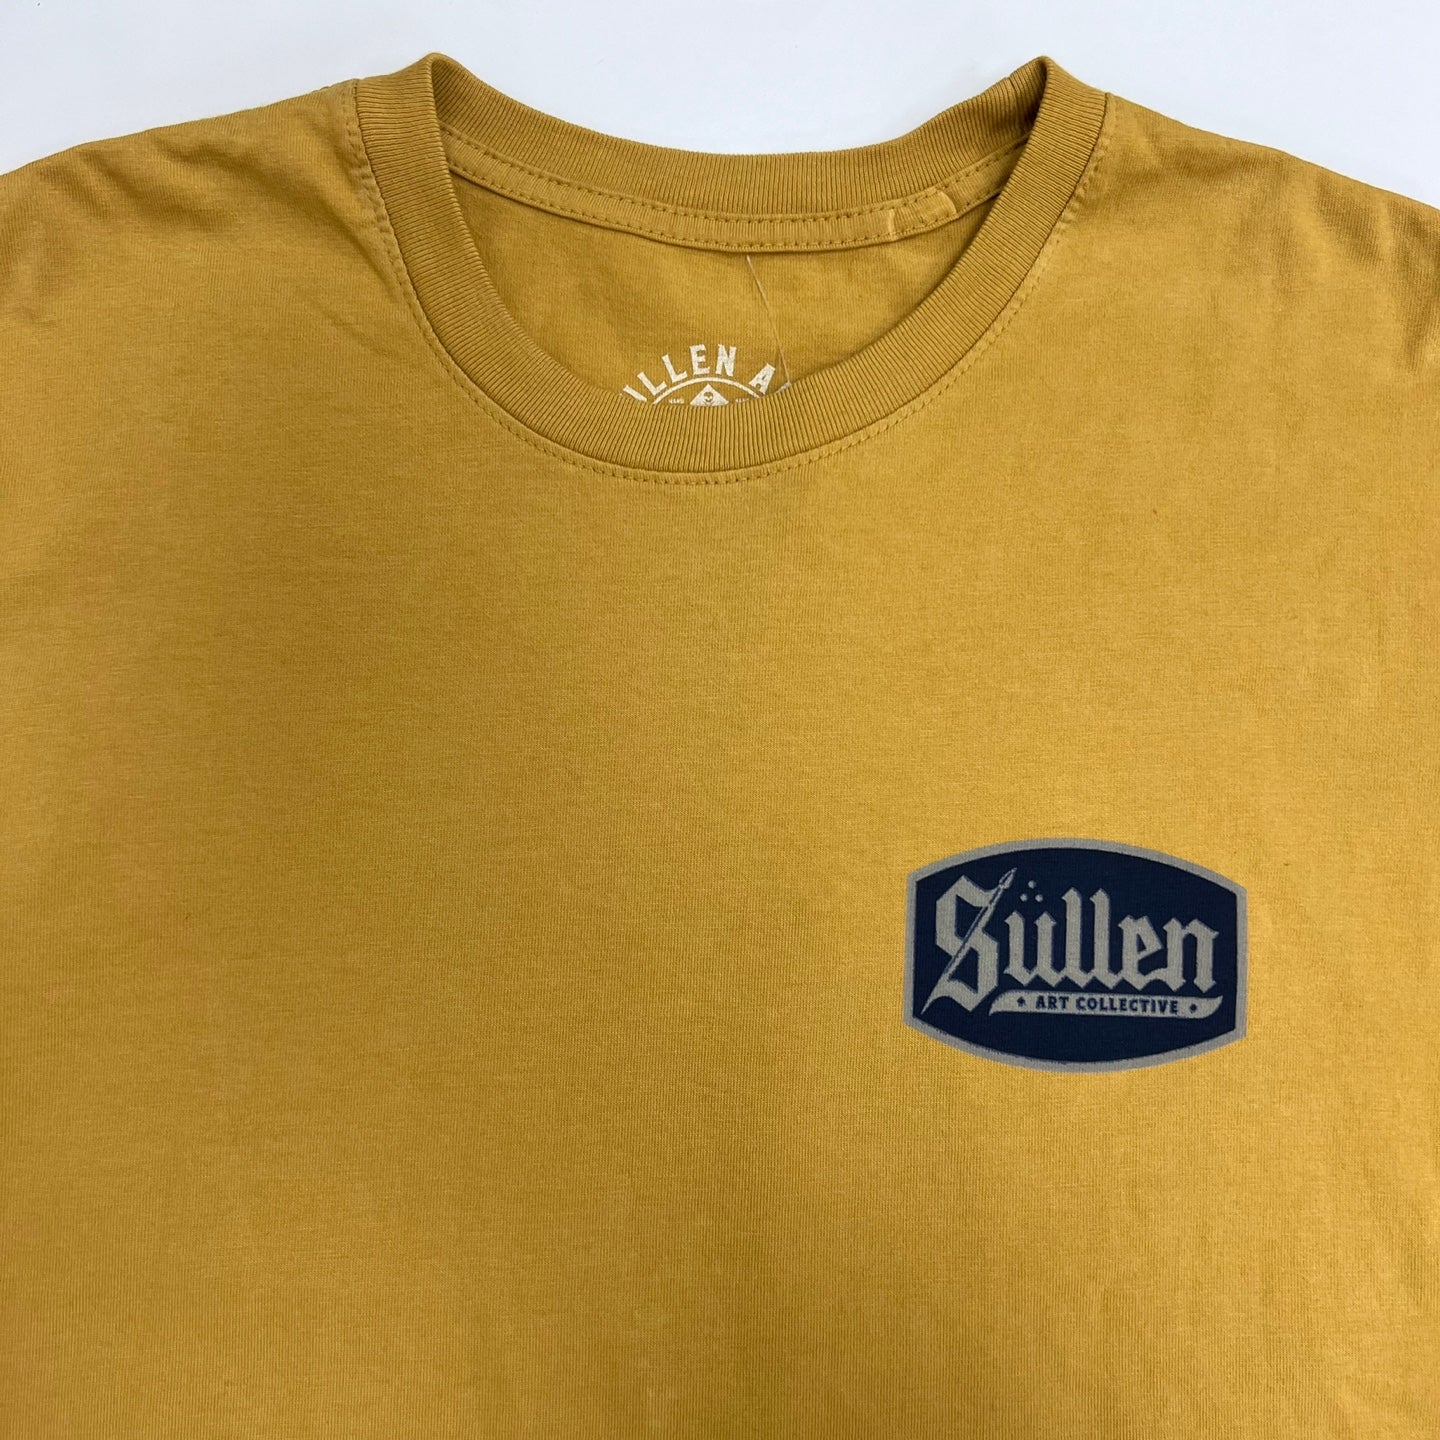 Sullen Art Collective Art Musta T-Shirt